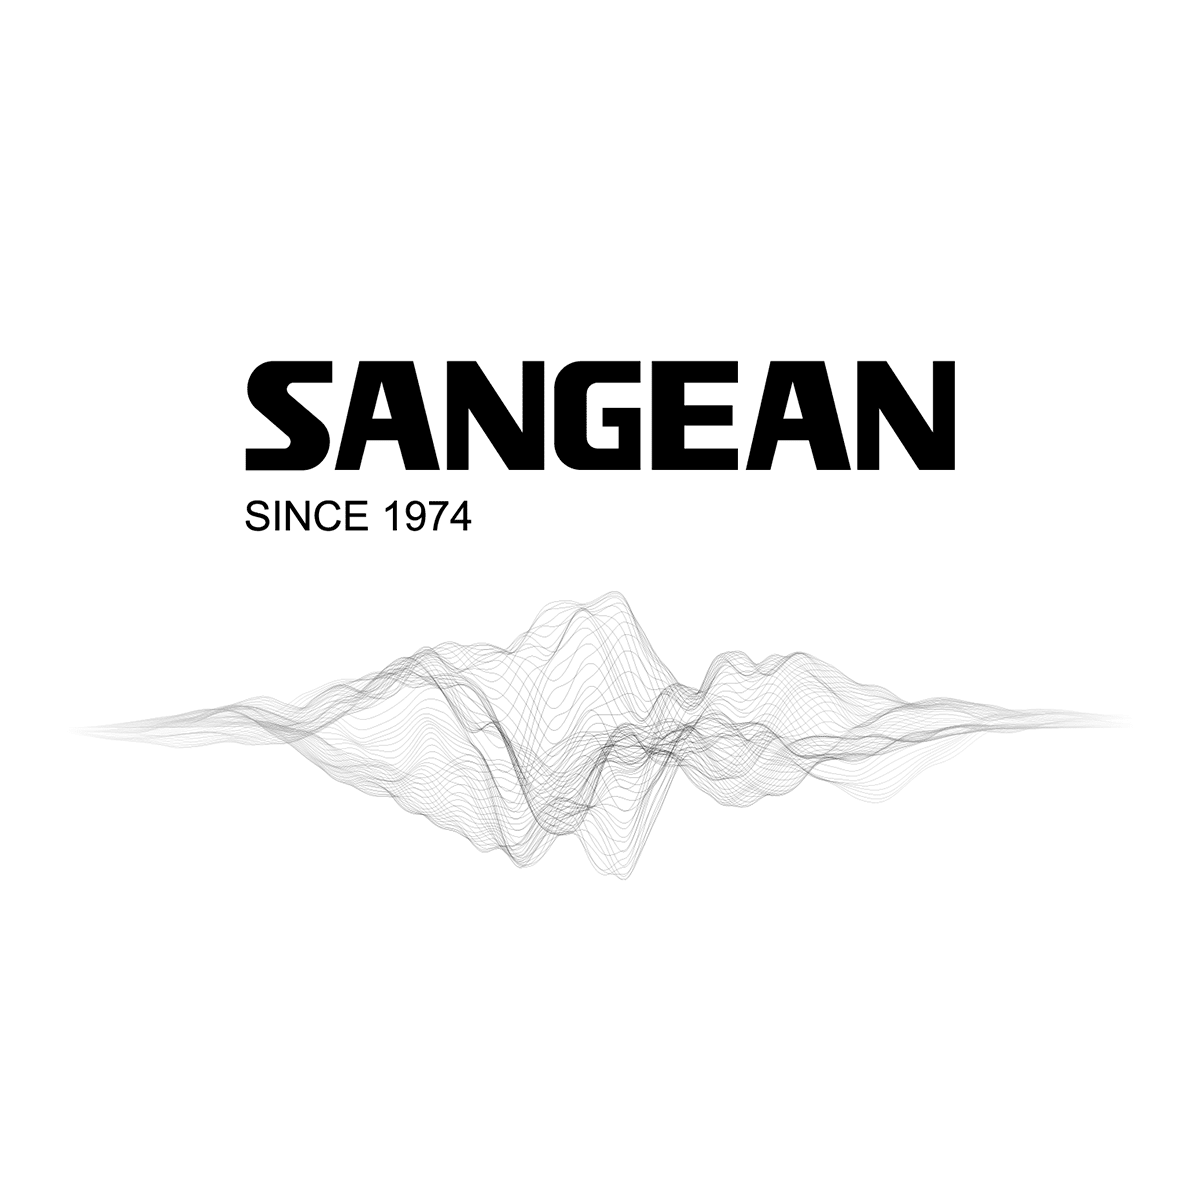 (c) Sangean.com